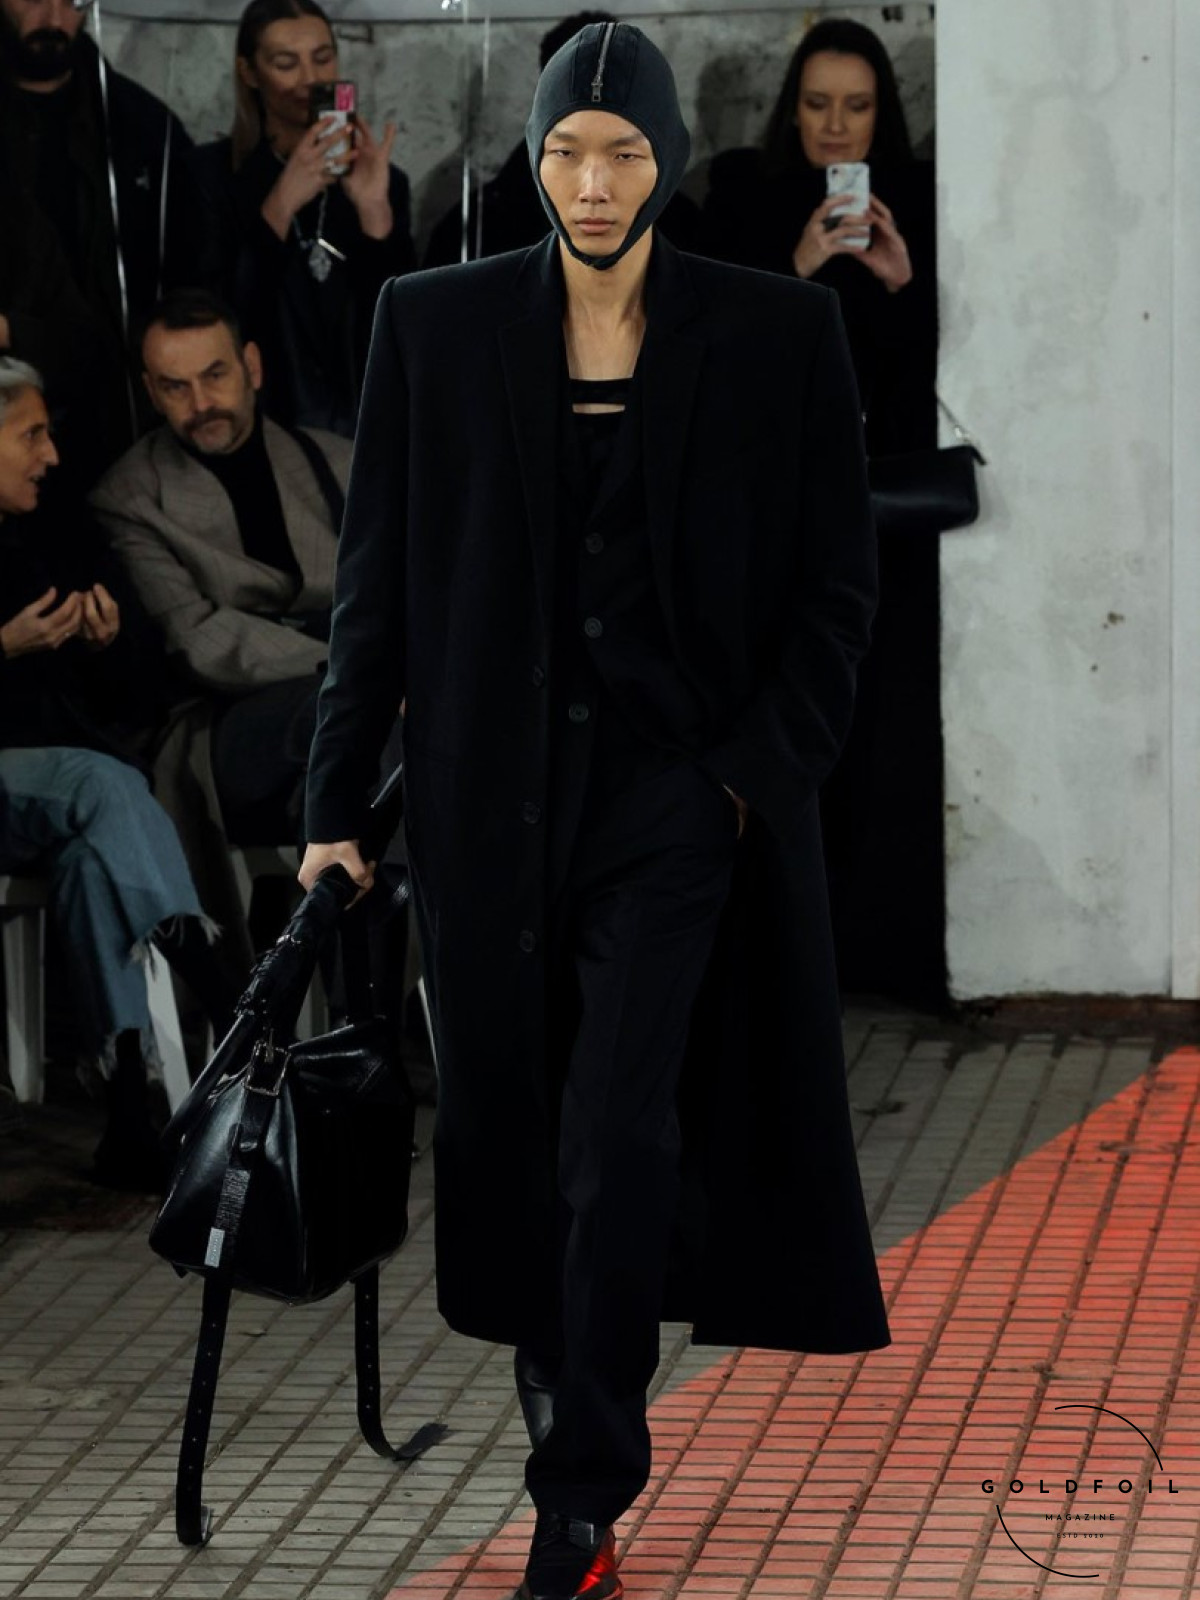 JordanLuca AW24 at Milan Fashion Week, a grunge aesthetic, on the runway